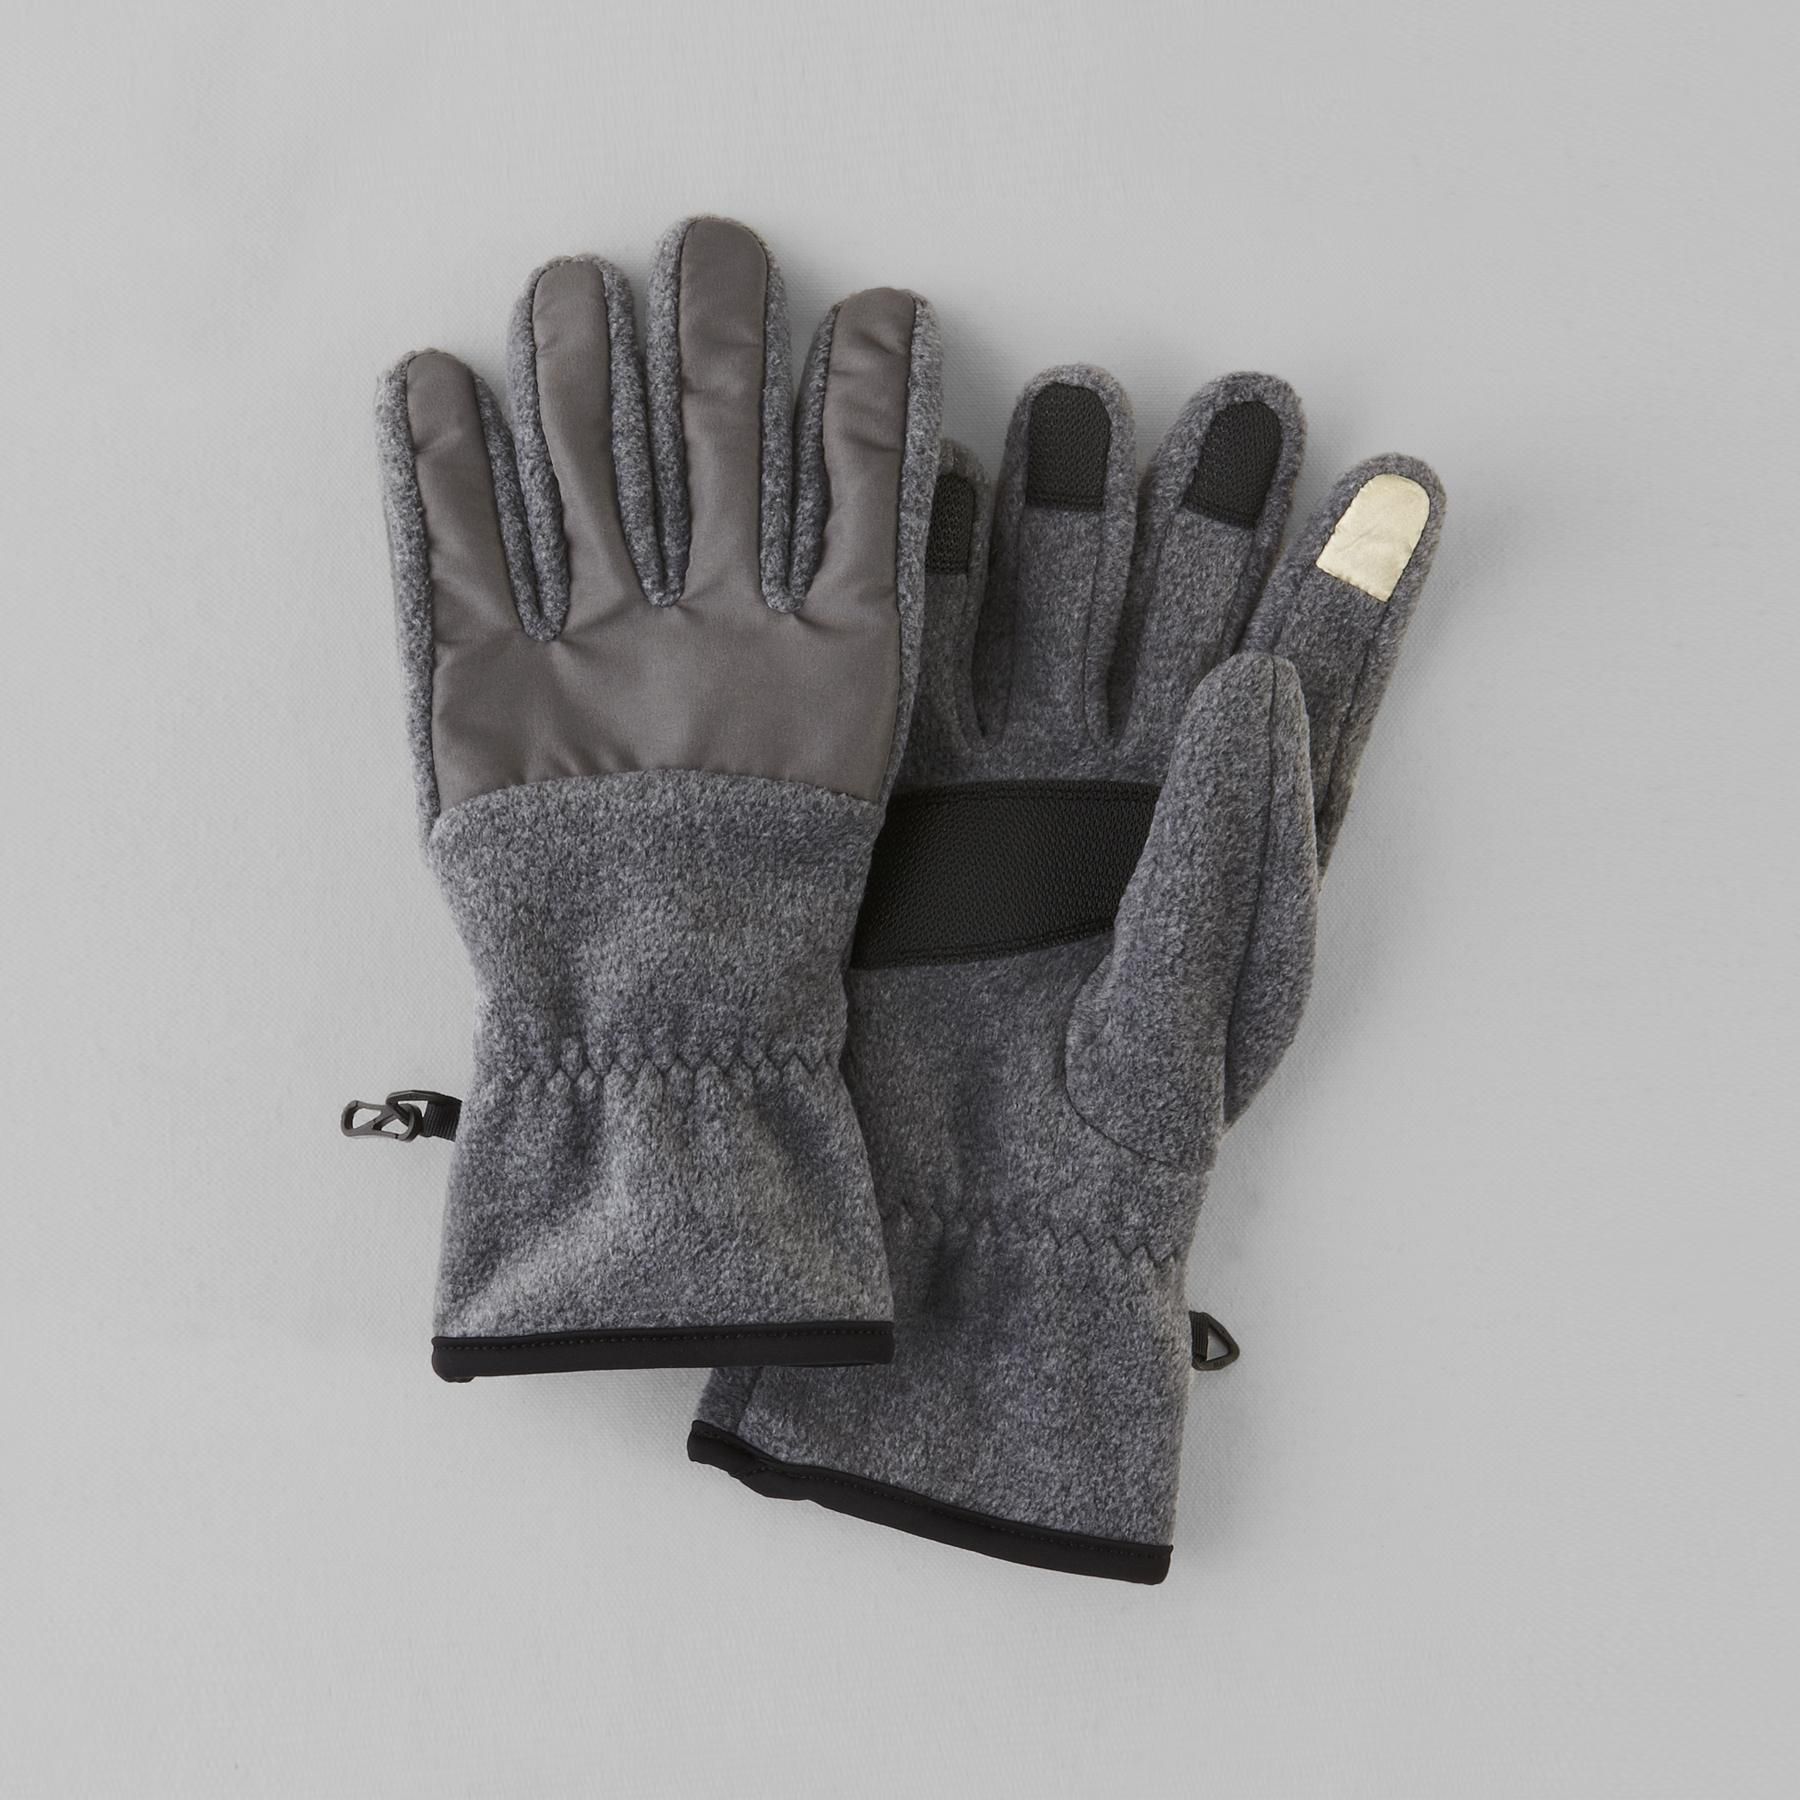 NordicTrack Men's Performance Fleece Gloves